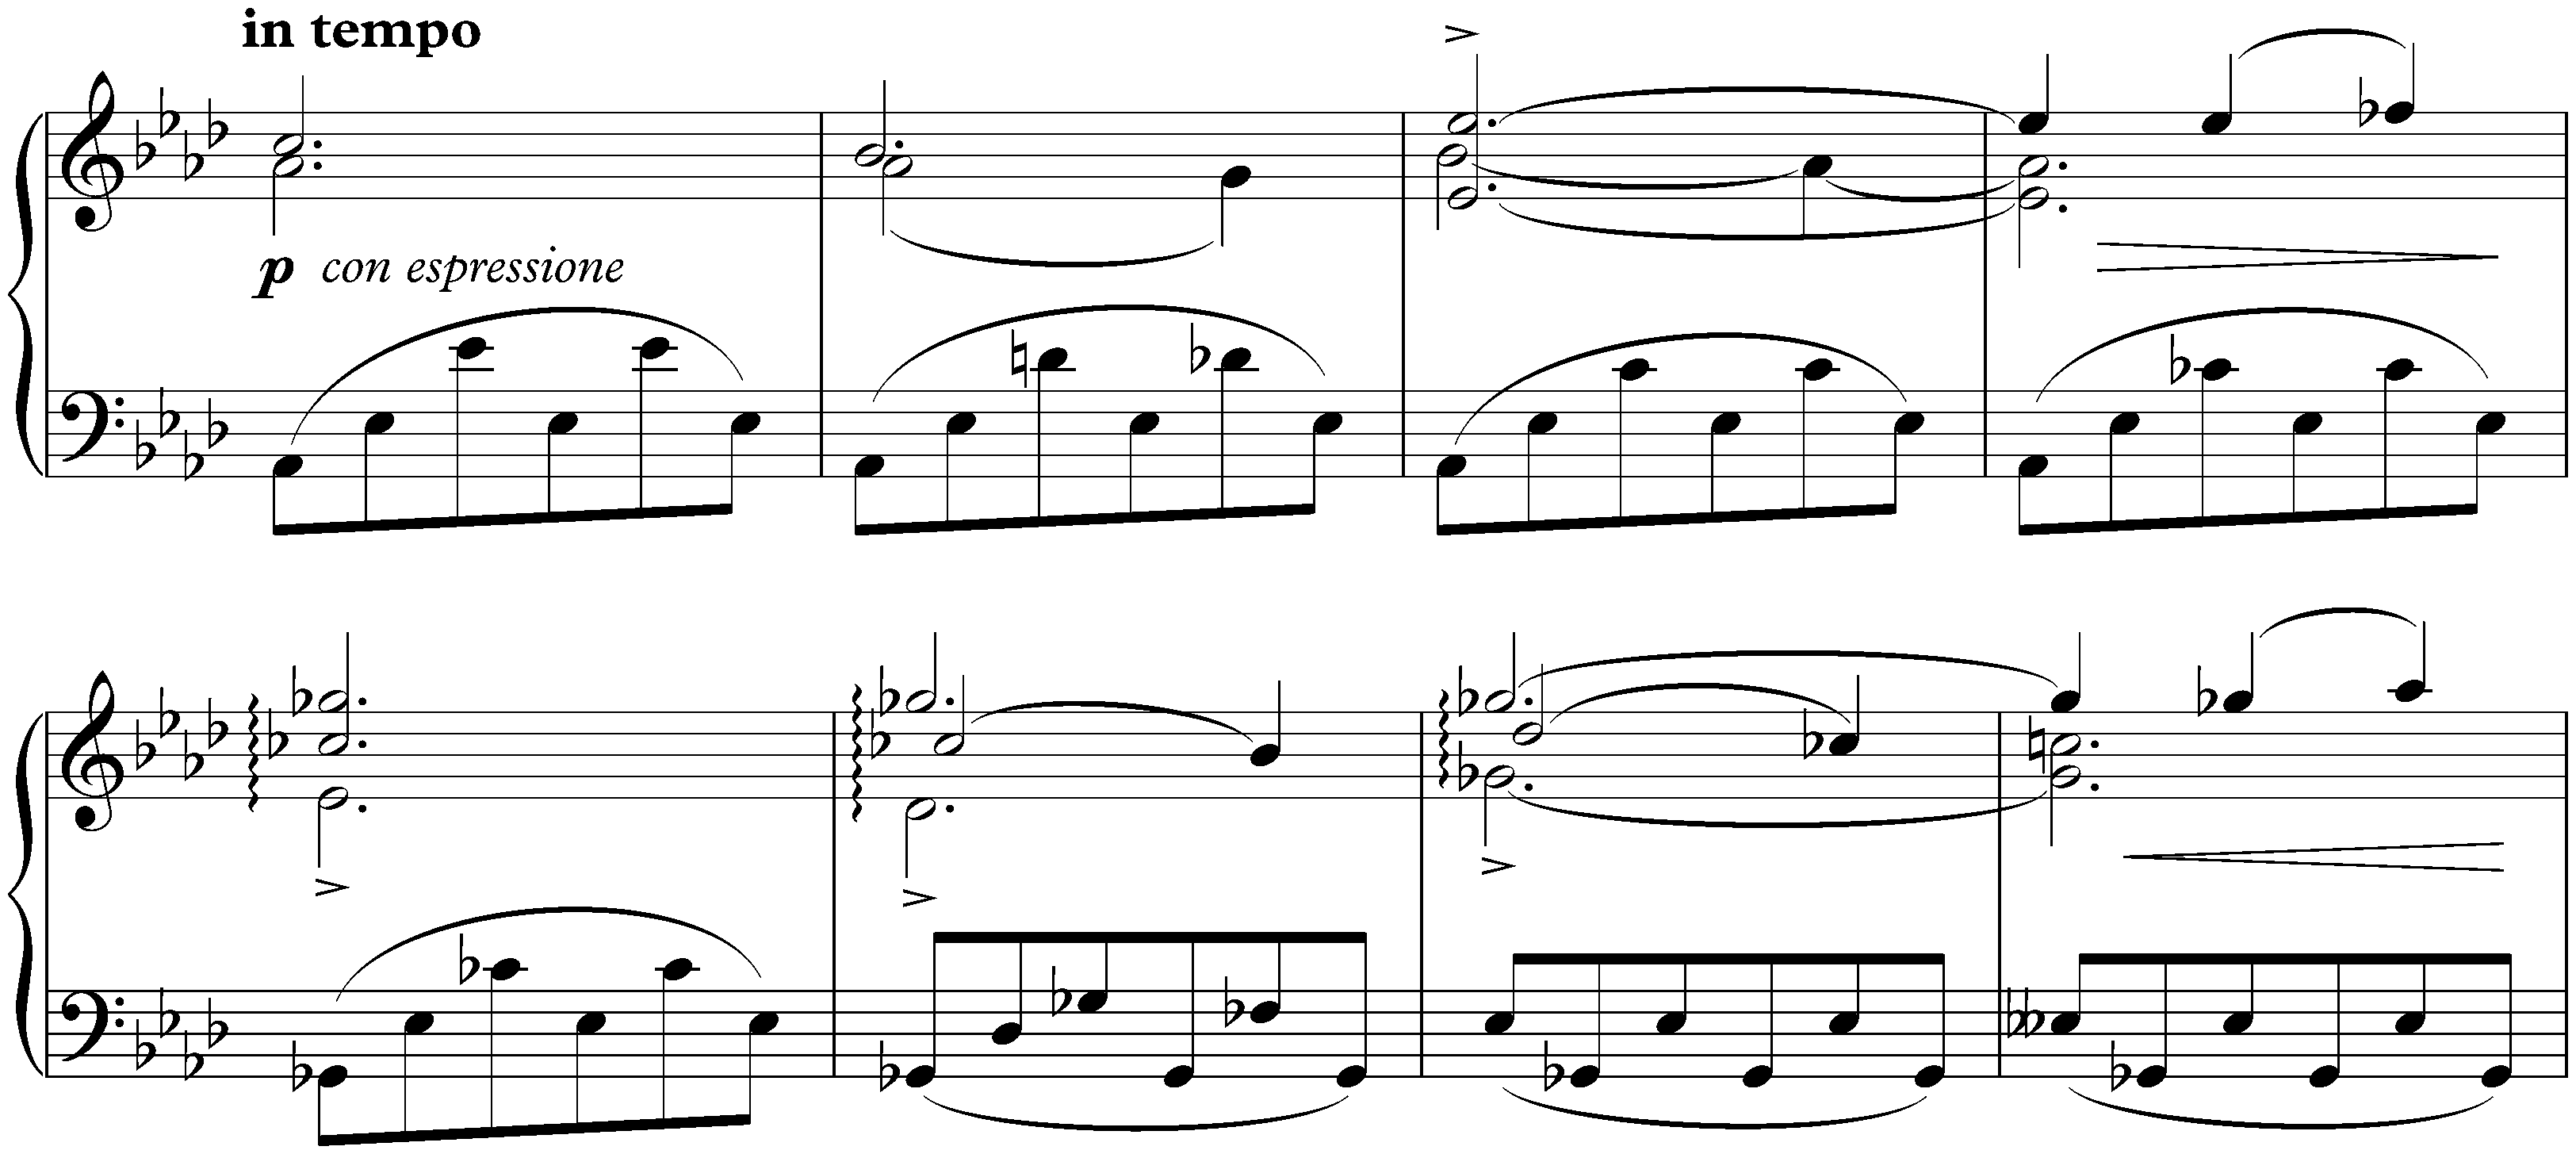 Sonata no. 3 in F minor, op. 5; 1. Allegro maestoso